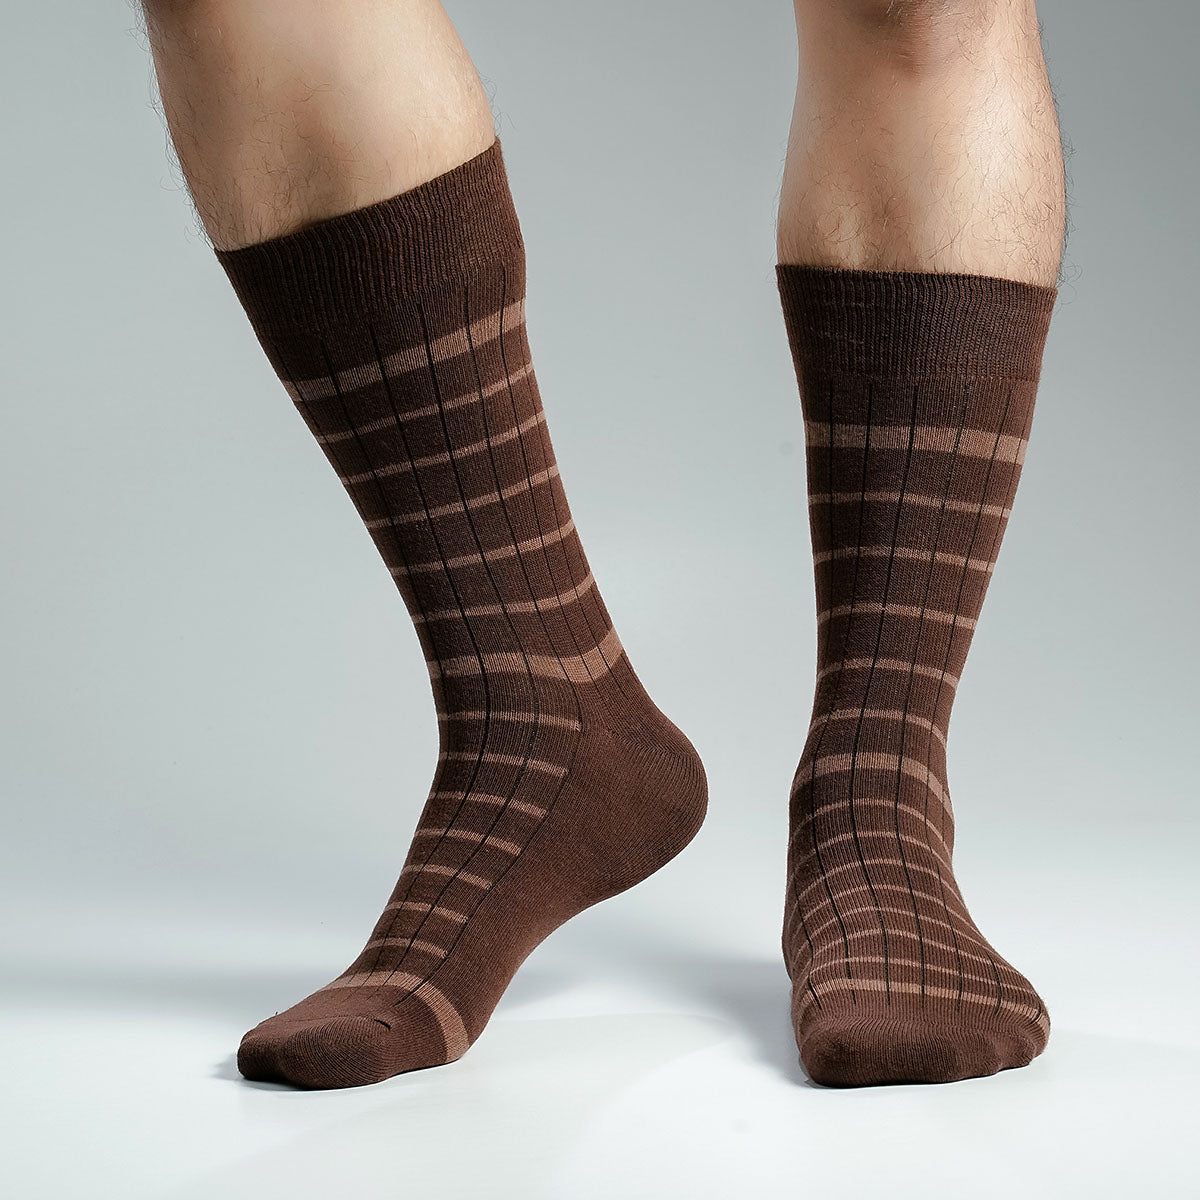 Pridezone Long Socks For Men